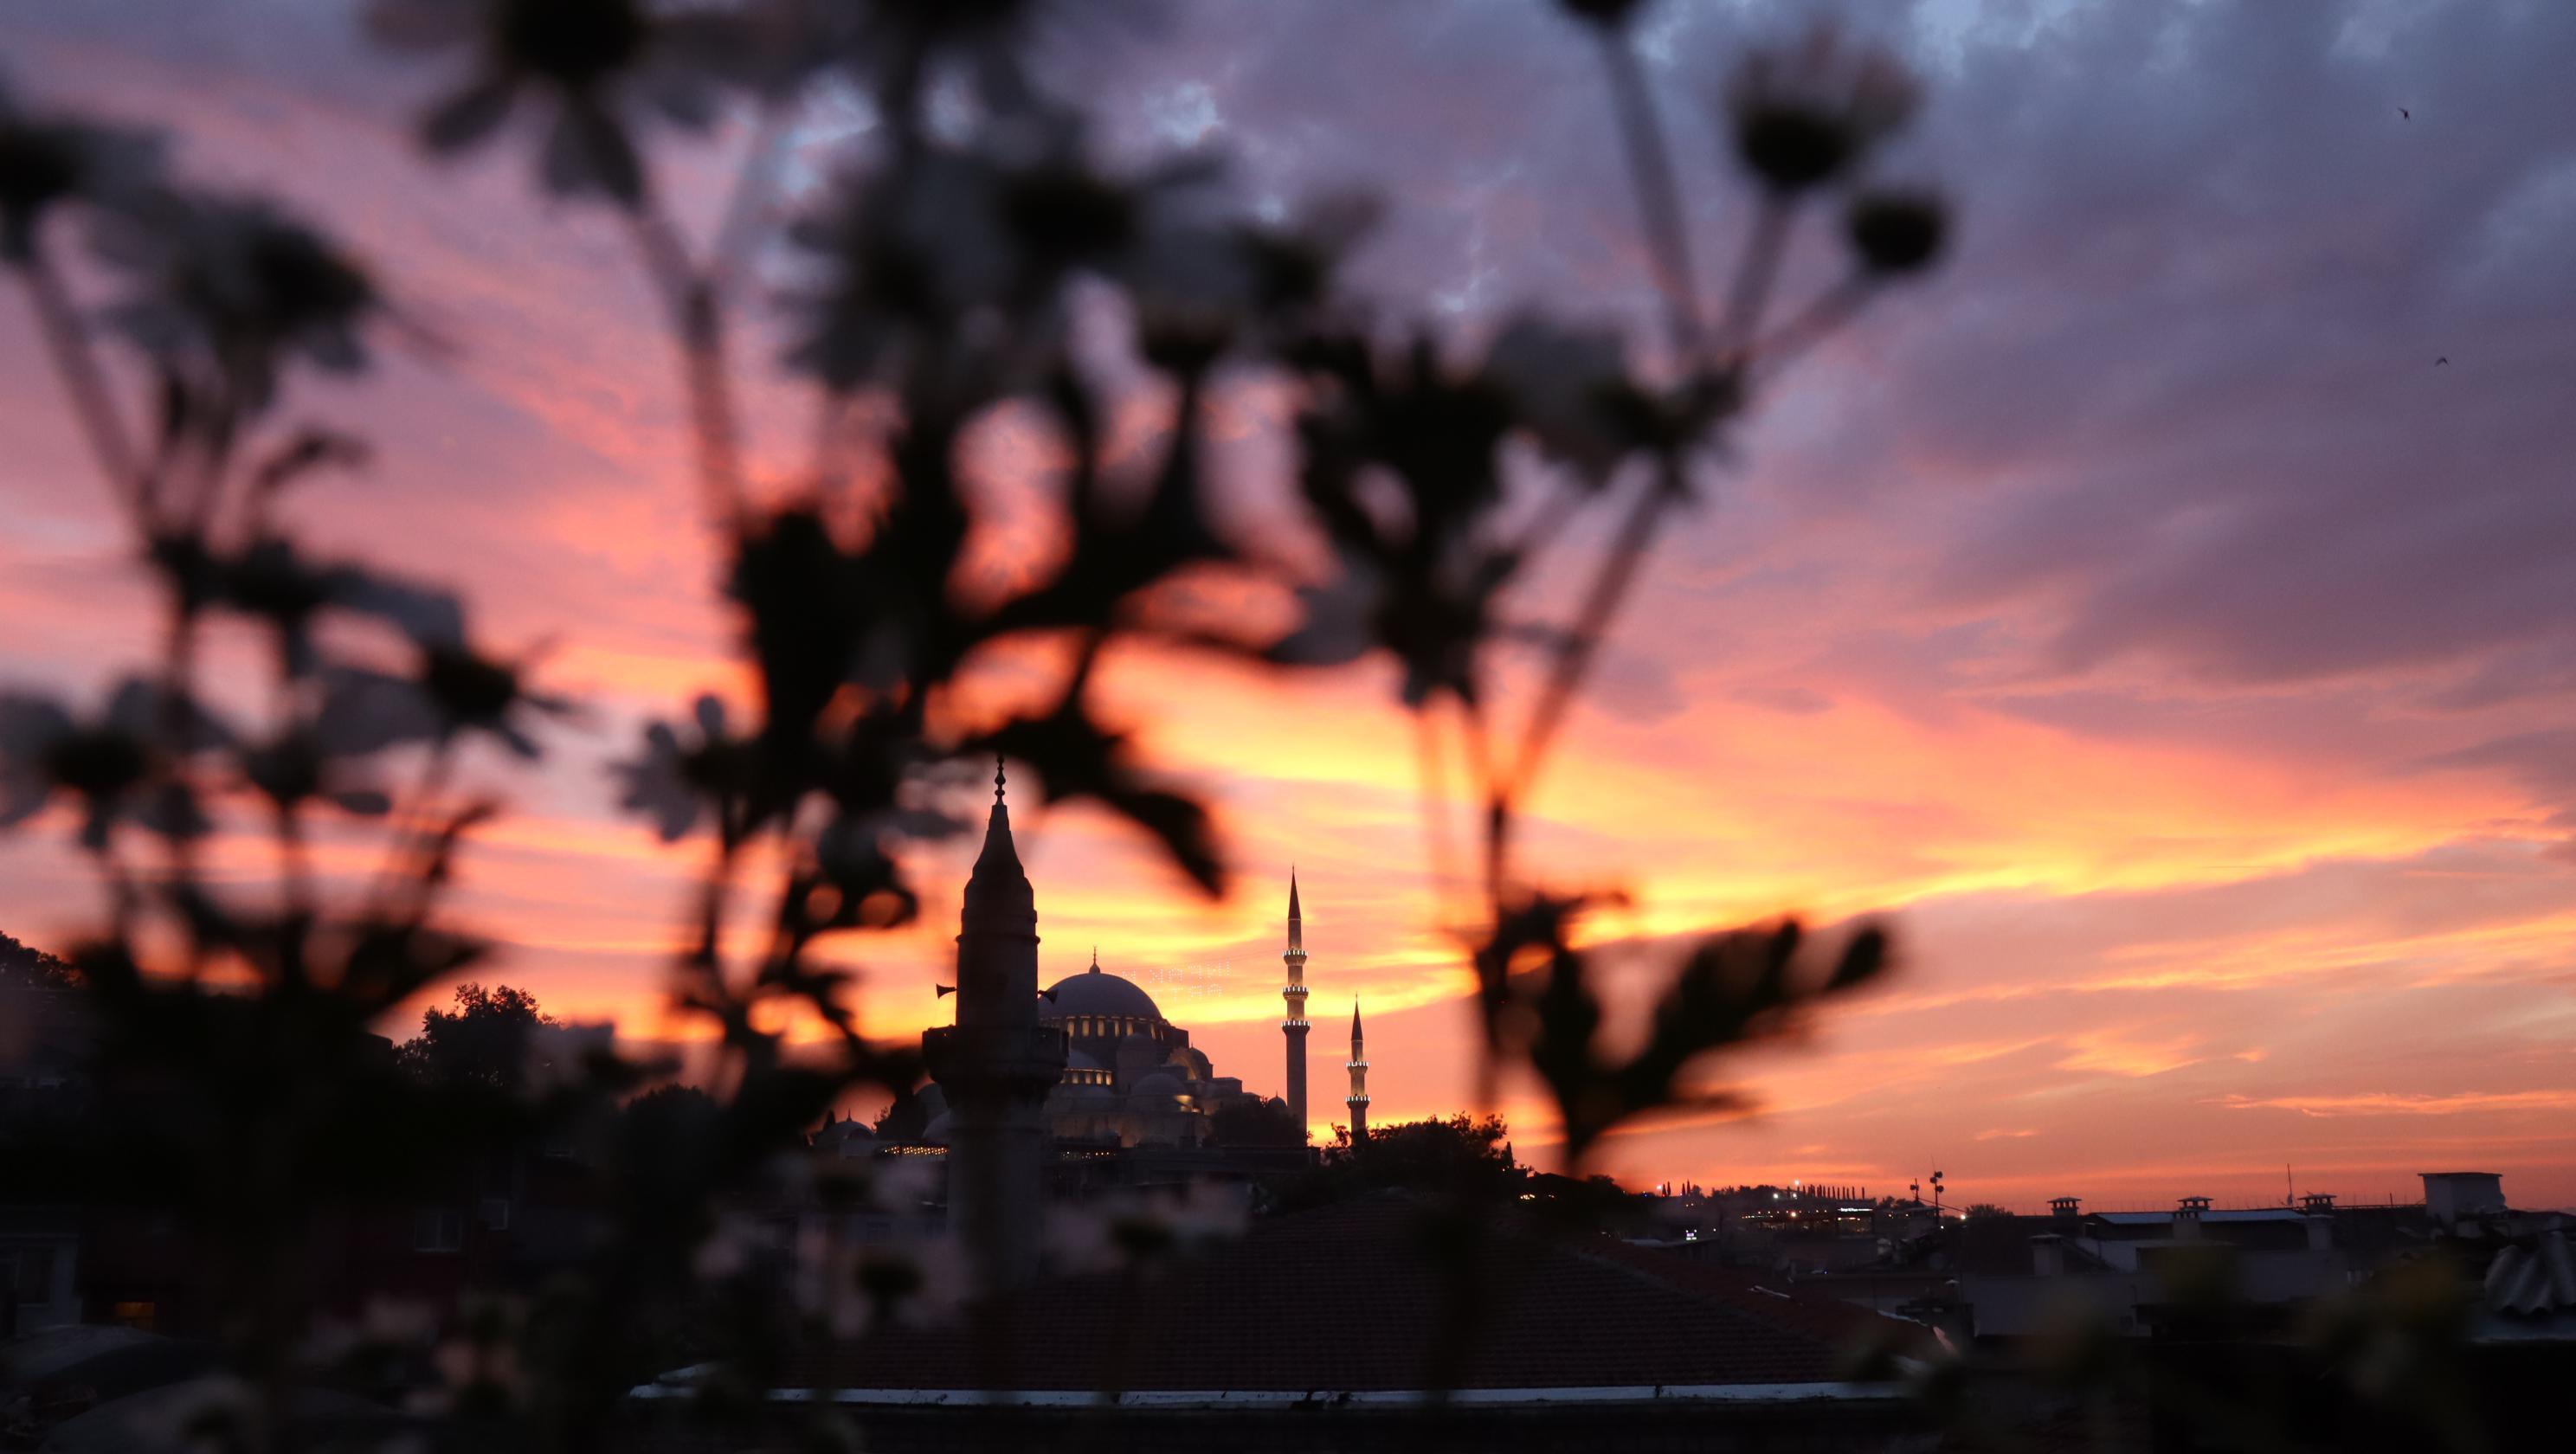 İstanbulda gün batımında görsel şölen